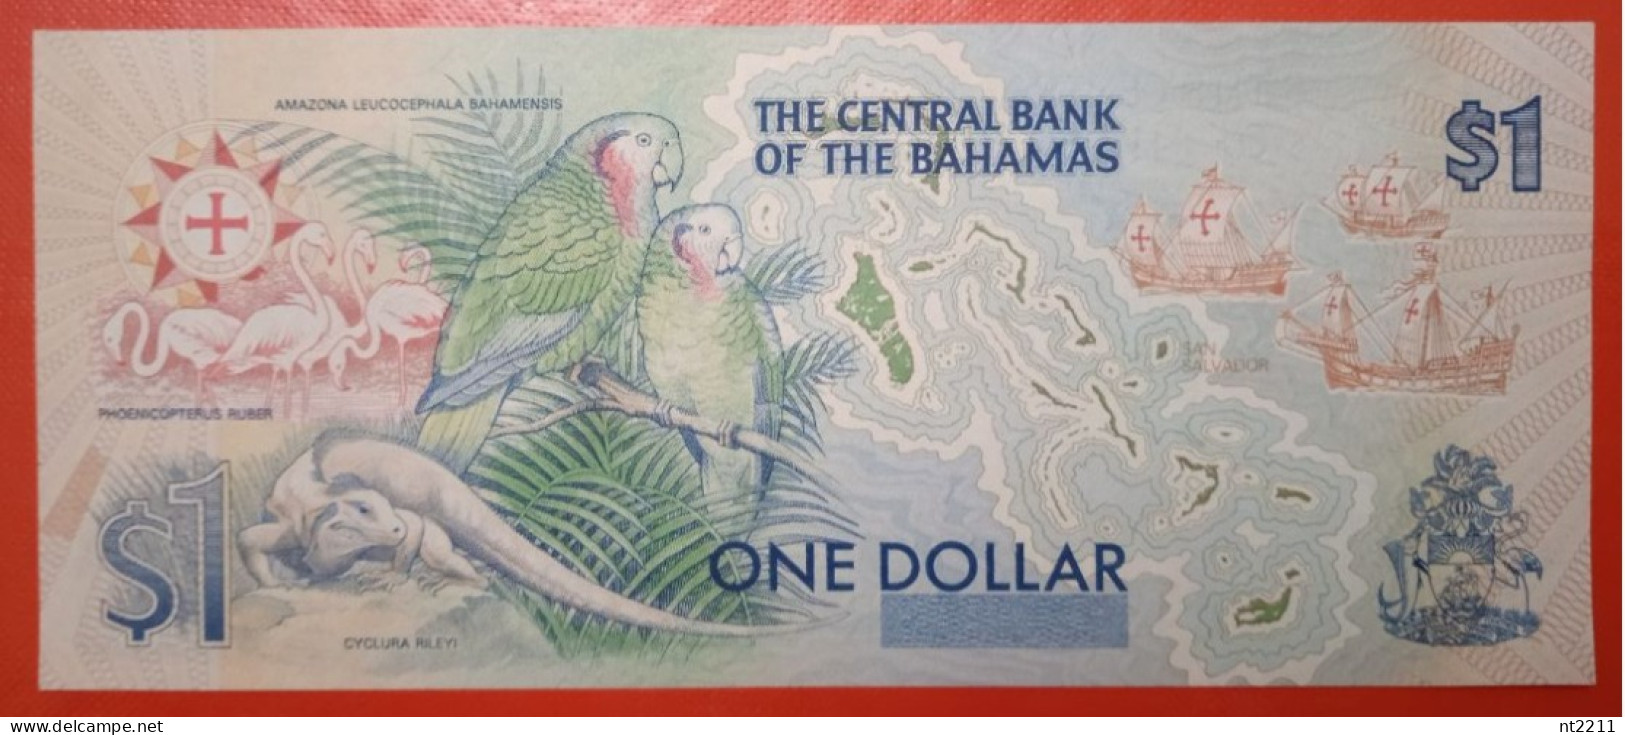 UNC Banknote 1 Dollar Bahamas 1992 With Columbus - Bahamas